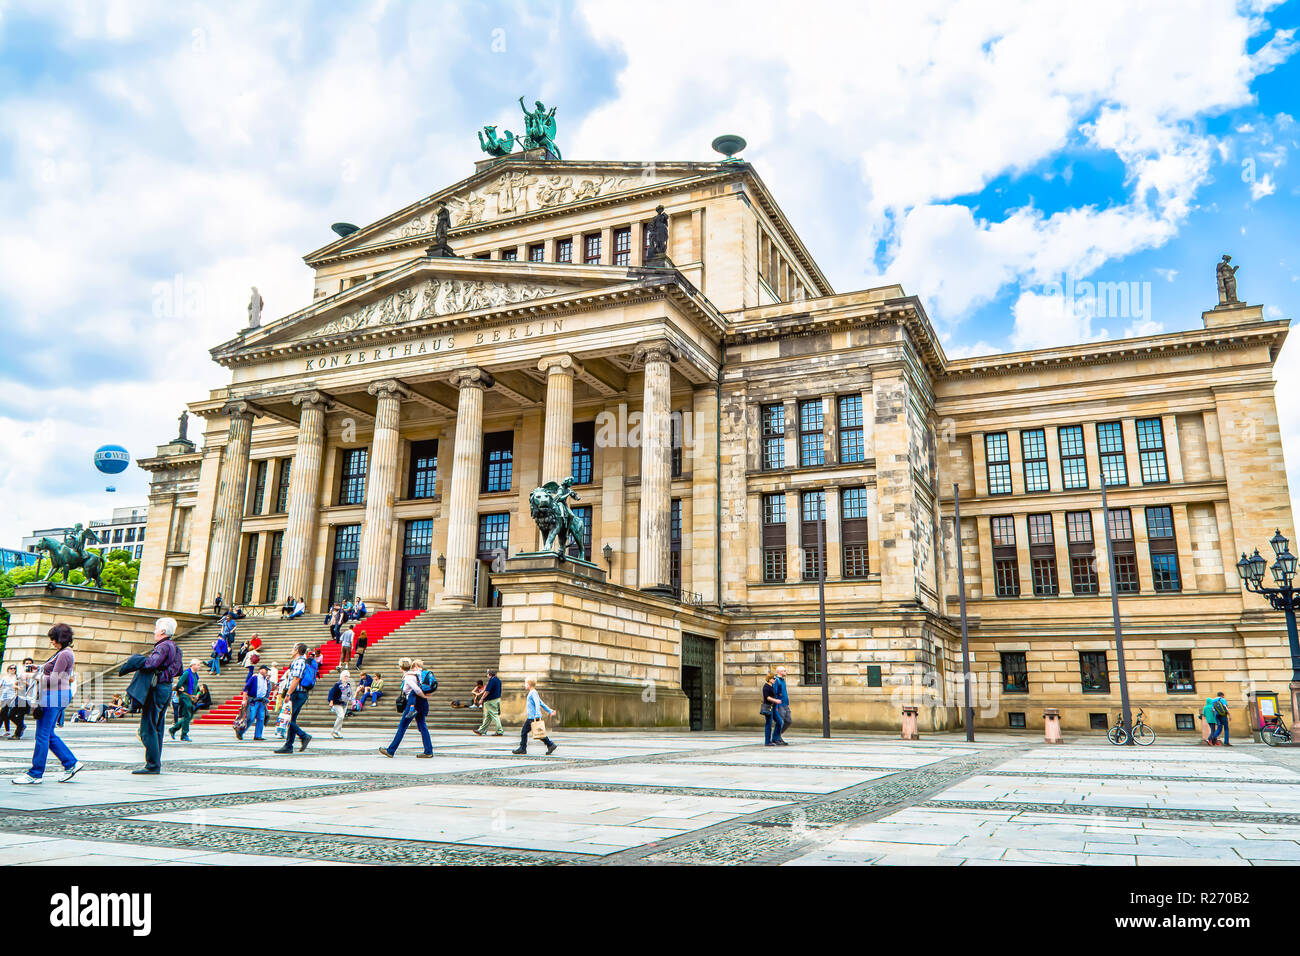 Berlin, 25 mai 2015 : Concert Hall à Berlin - érigée en 1818-1821 ans. Conçu par Karl Friedrich Schinkel comme "Konzerthaus Berlin'. B néoclassique Banque D'Images